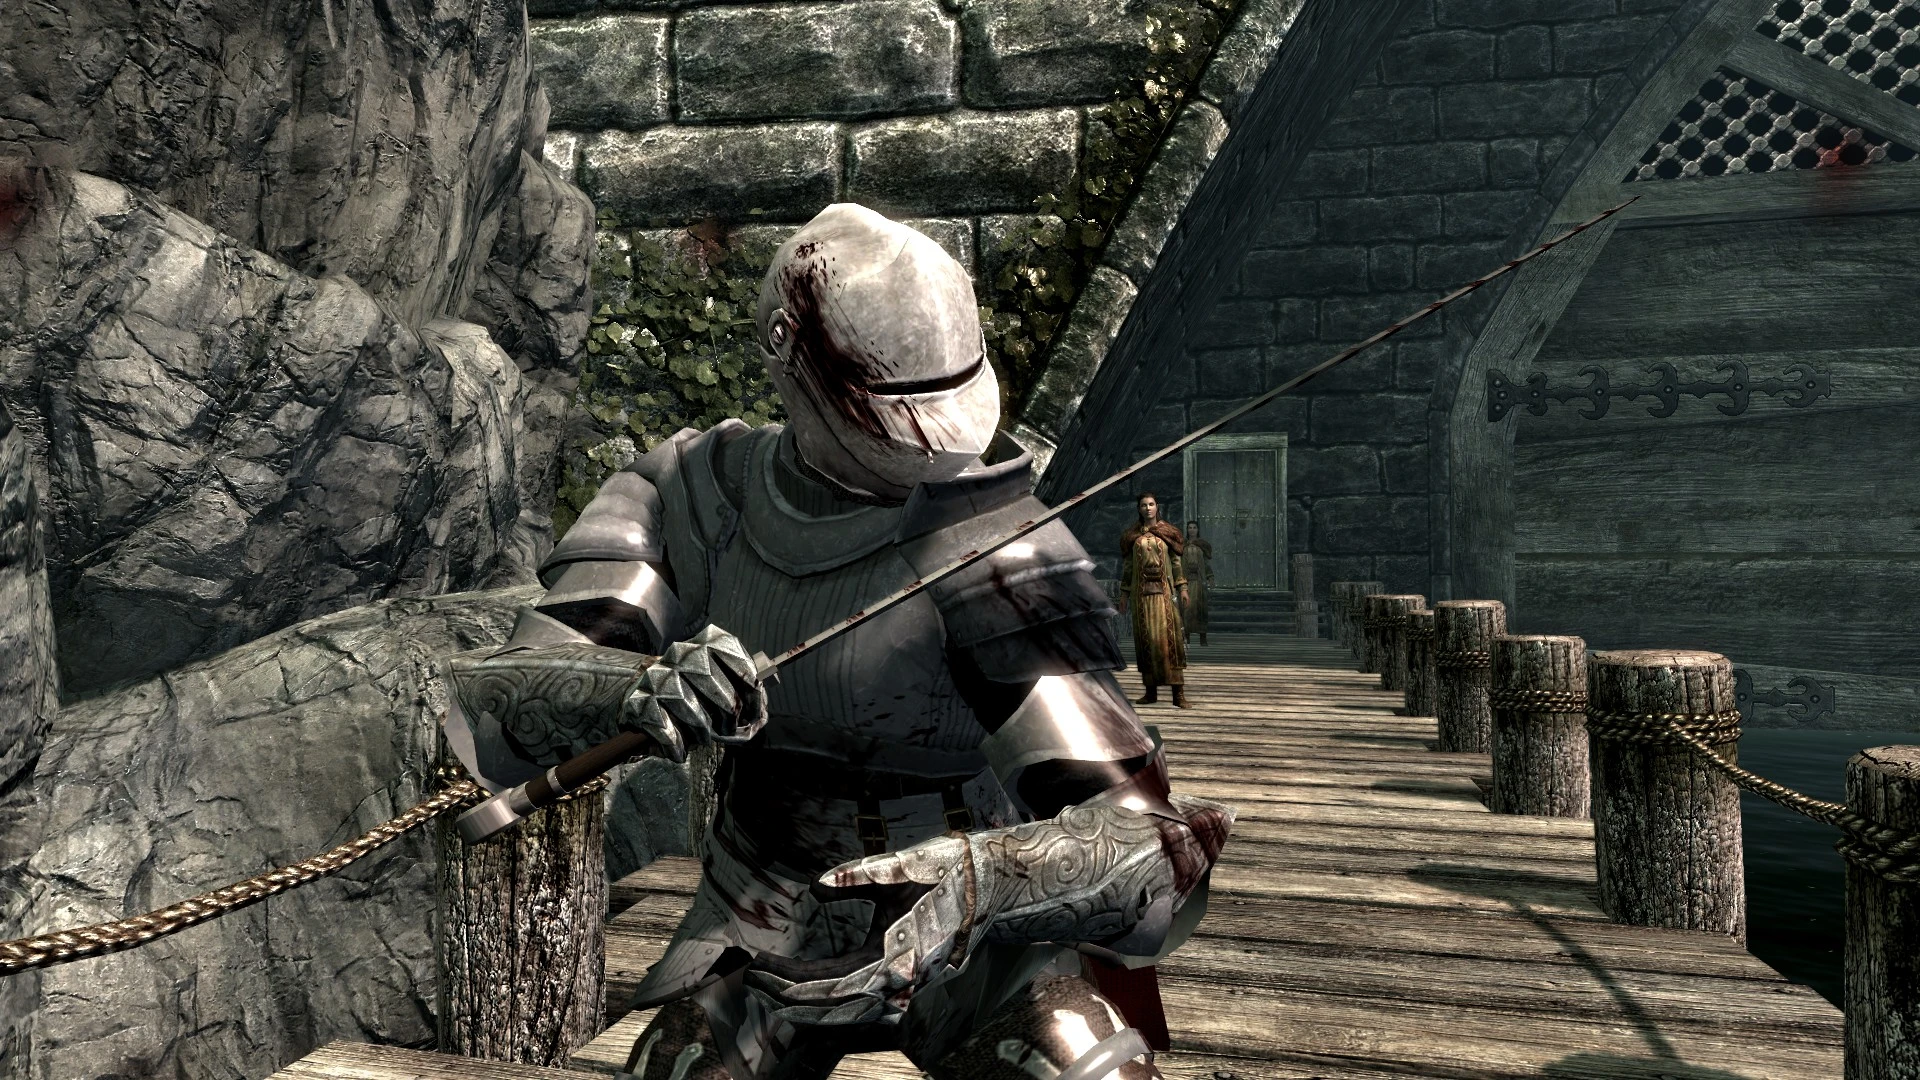 Skyrim medieval knight armor - litoyou